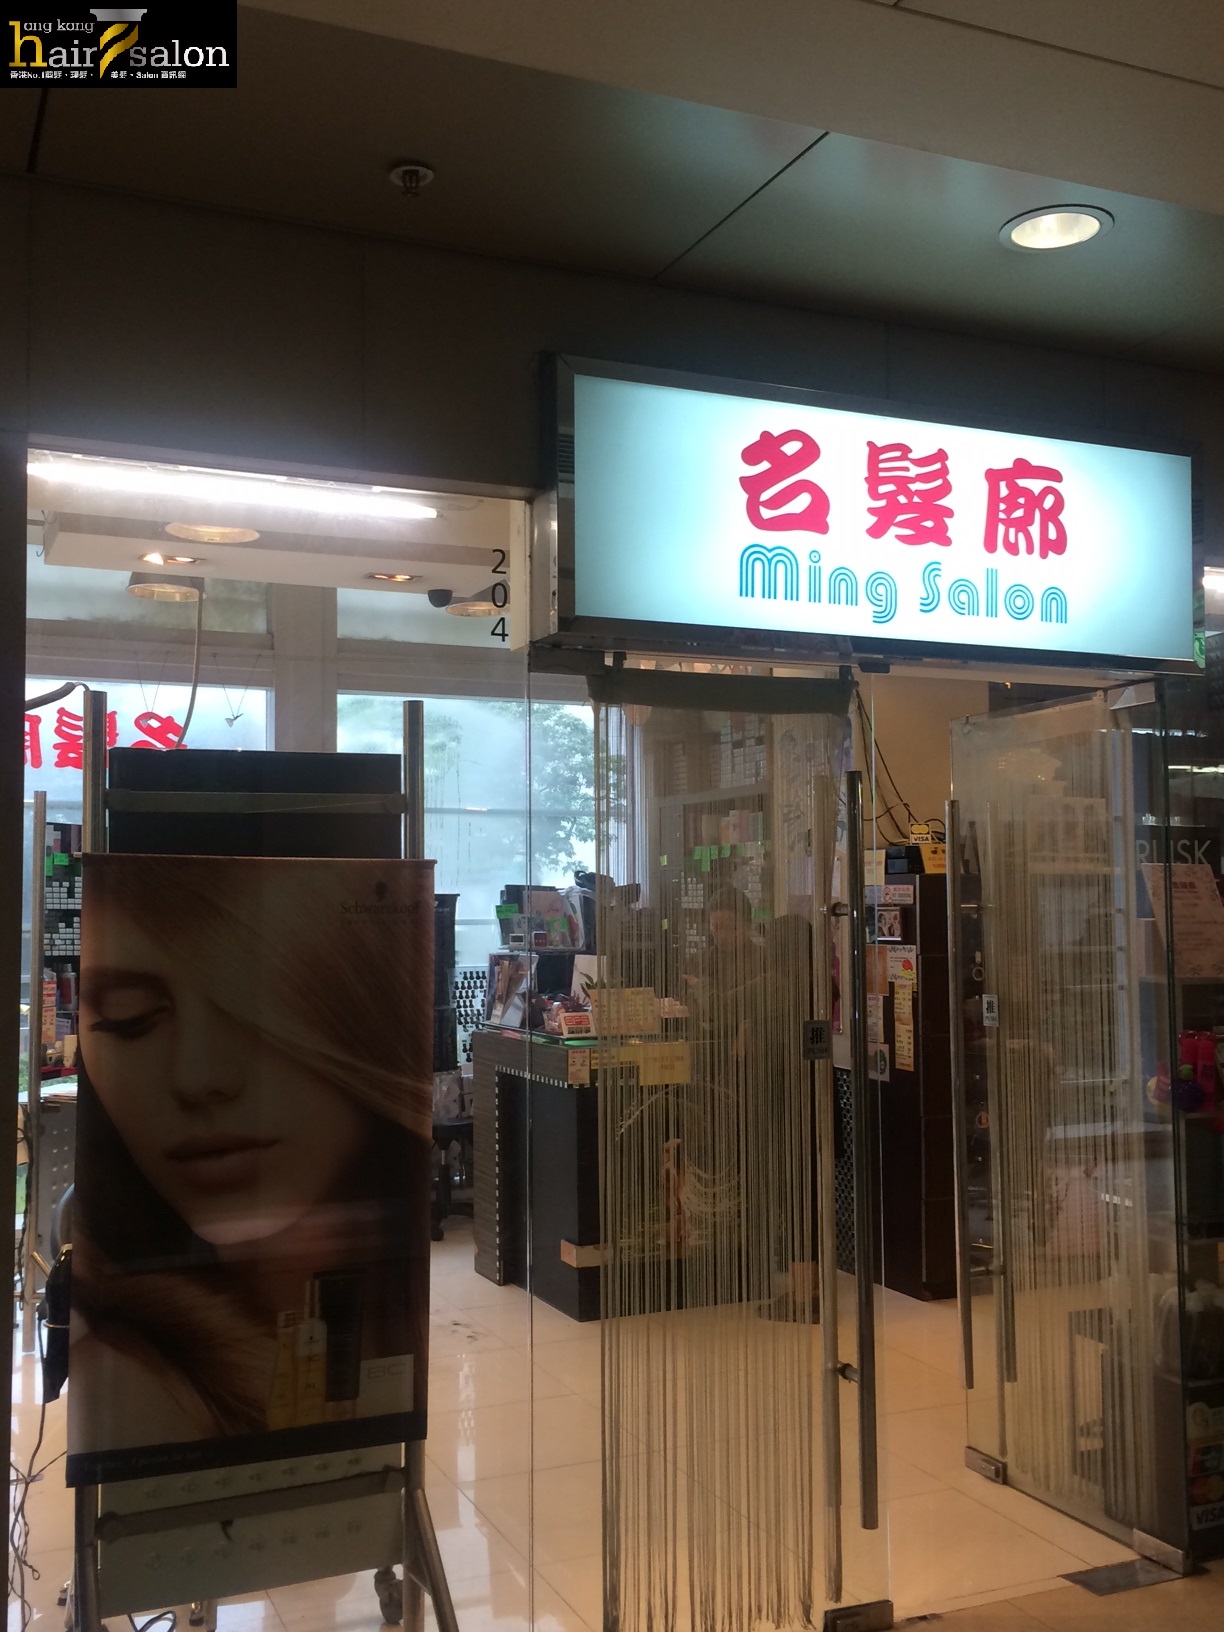 髮型屋Salon集团名髮廊 Ming Salon (葵涌店) @ 香港美髮网 HK Hair Salon